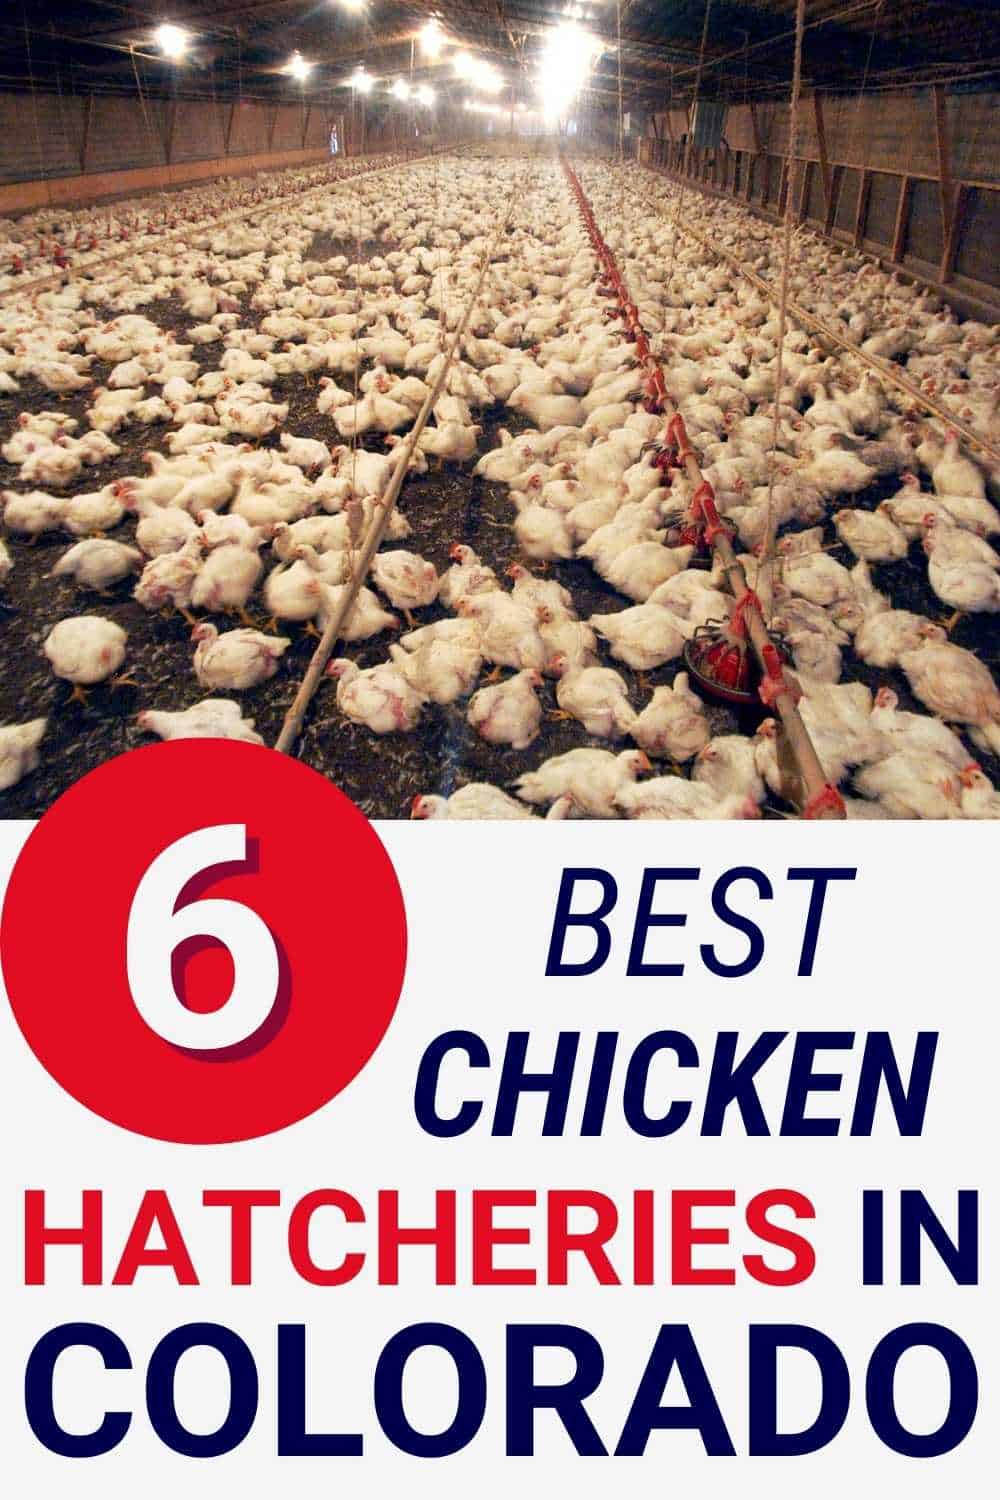 Best Chicken Hatcheries in Colorado